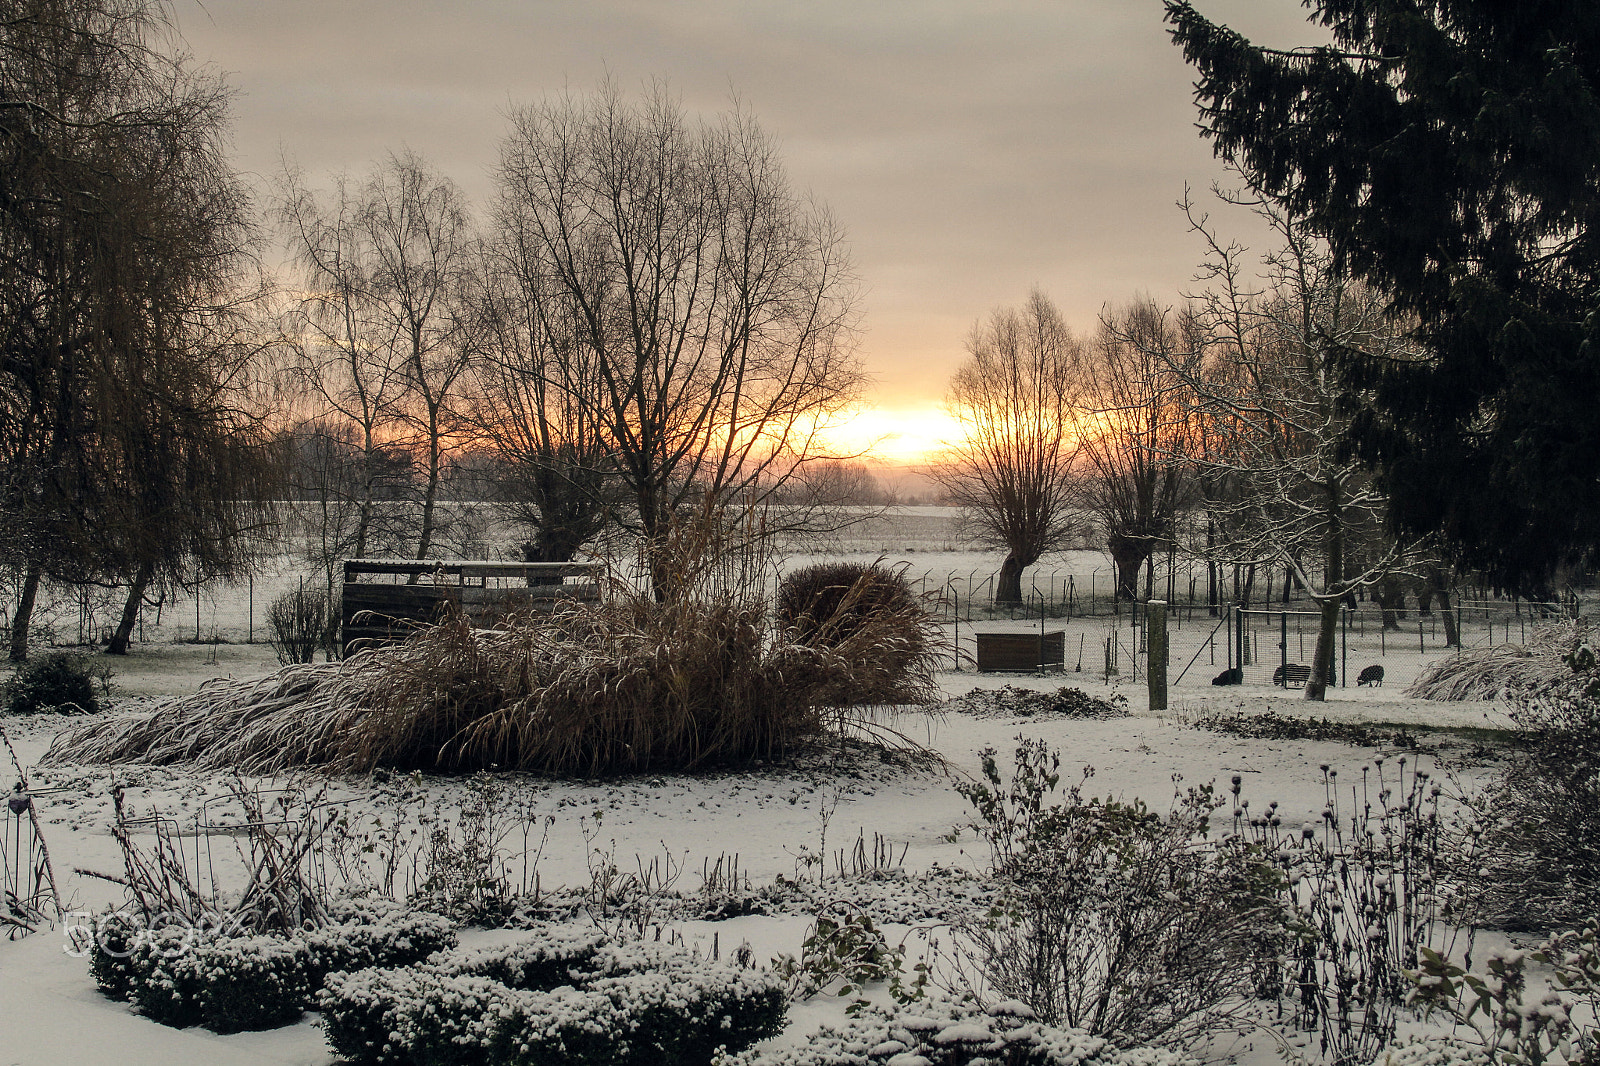 Canon EOS 7D sample photo. Winter morning photography